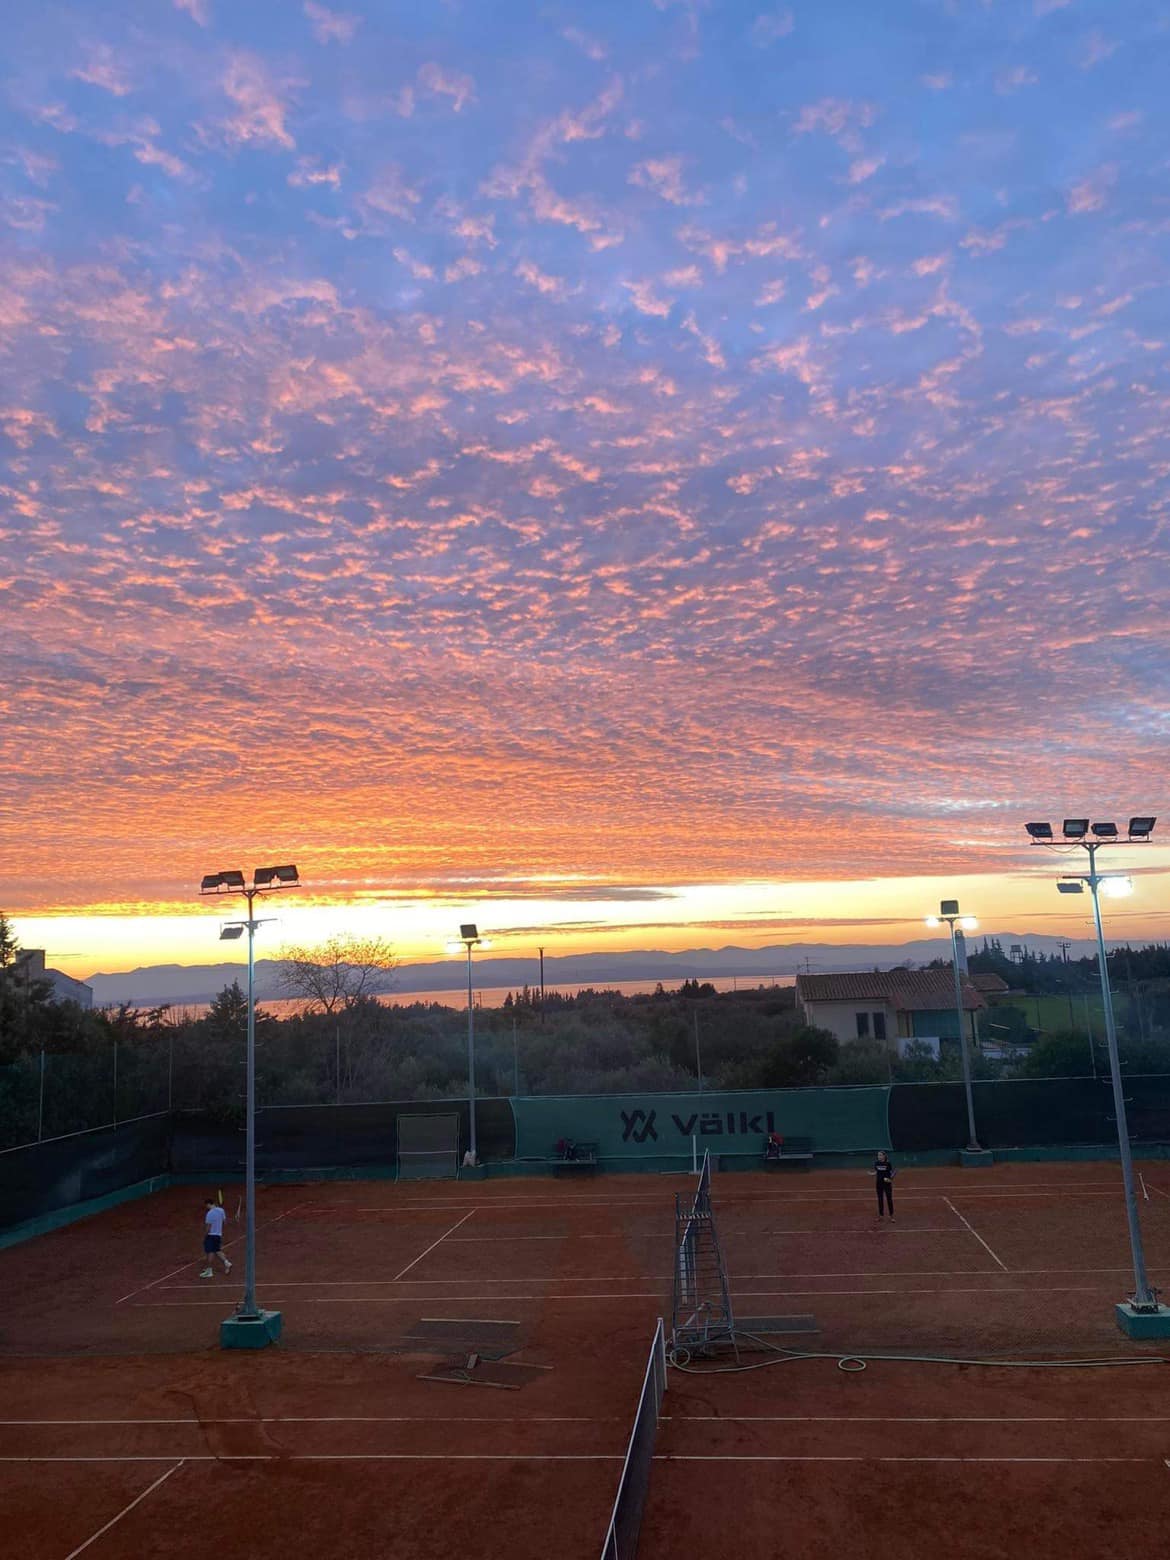 Τα χρώματα του ουρανού στο TFF Tenis Academy!